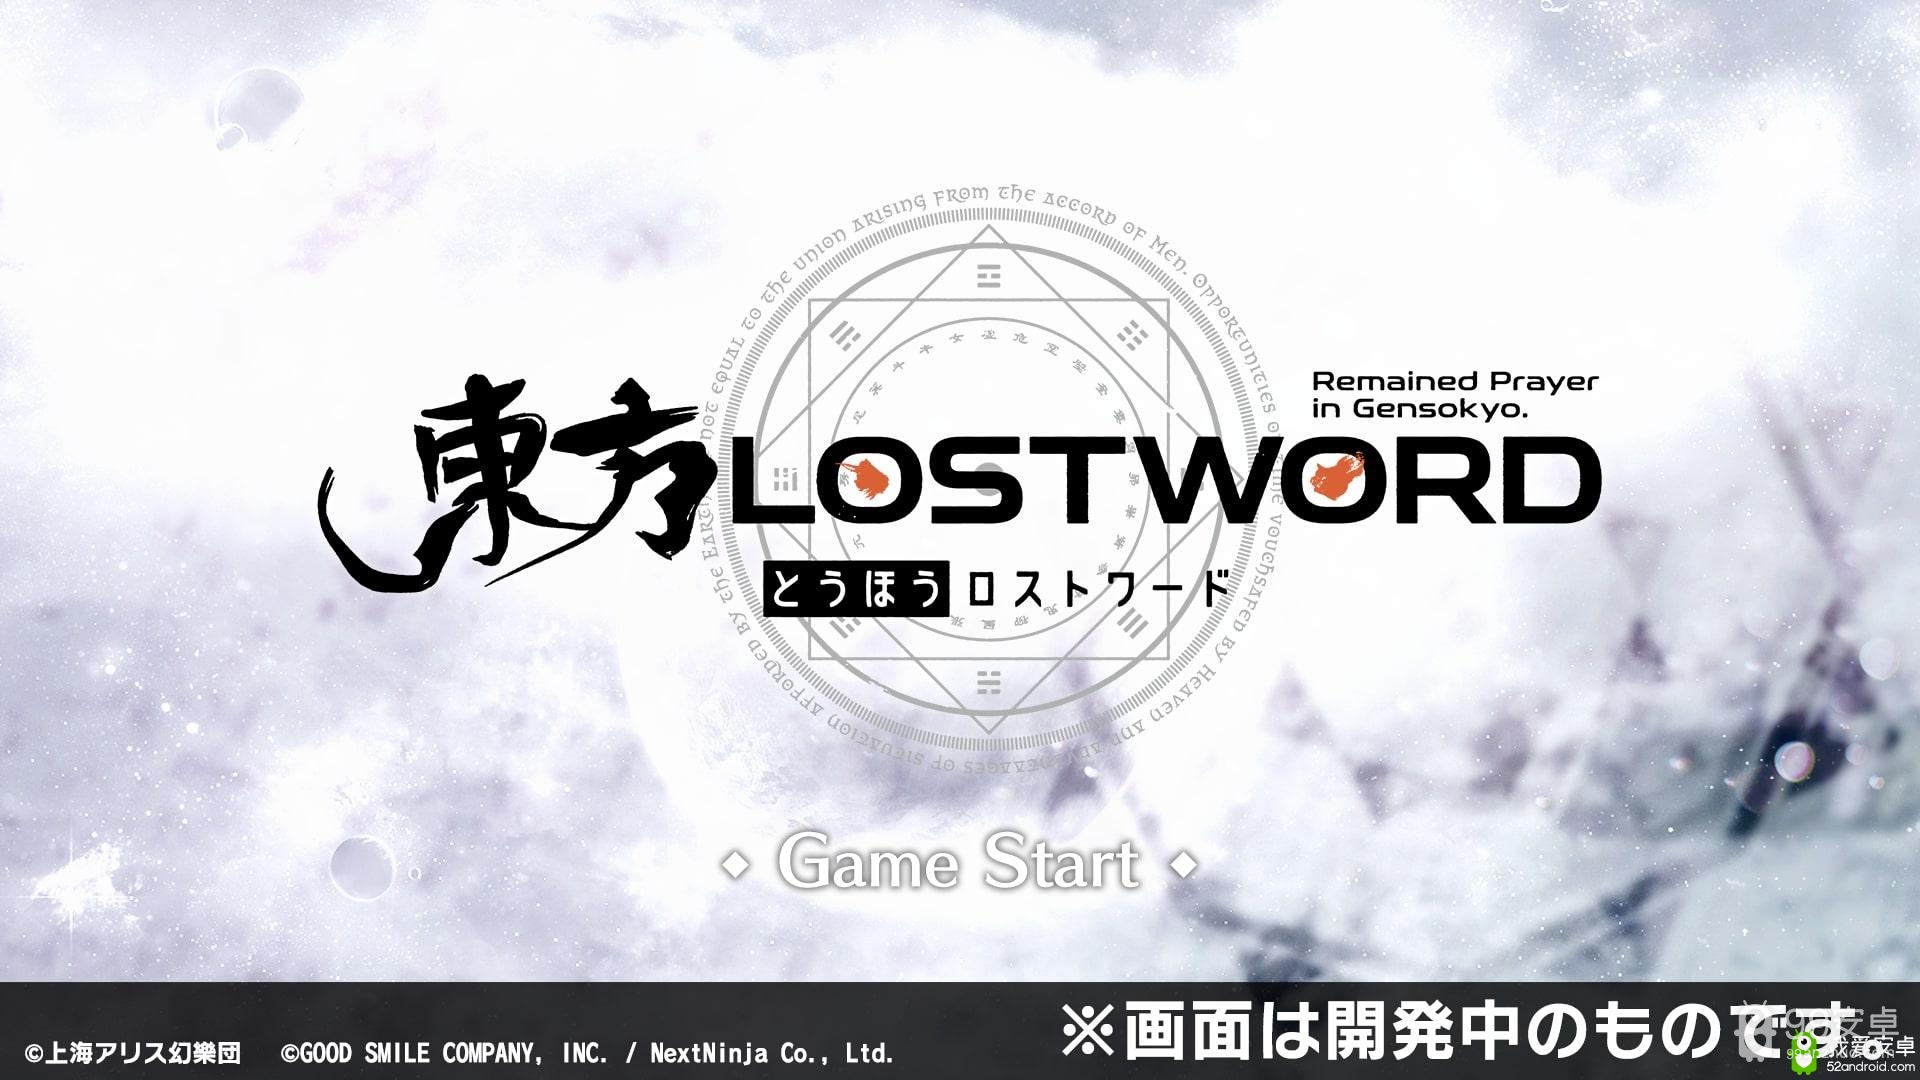 RPG手机游戏《东方LostWord》公开更多登场角色